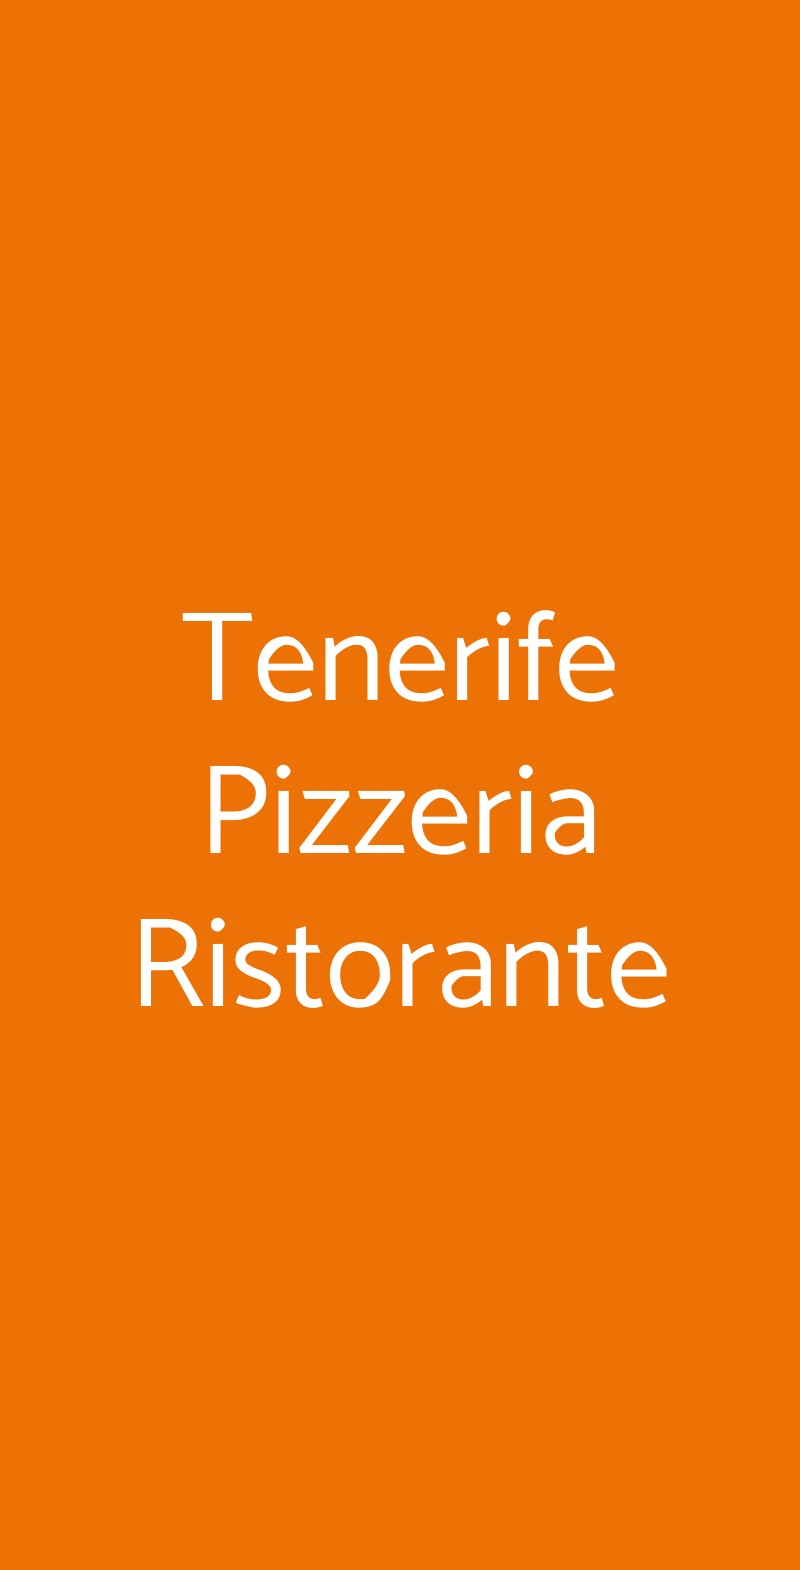 Tenerife Pizzeria Ristorante Bologna menù 1 pagina